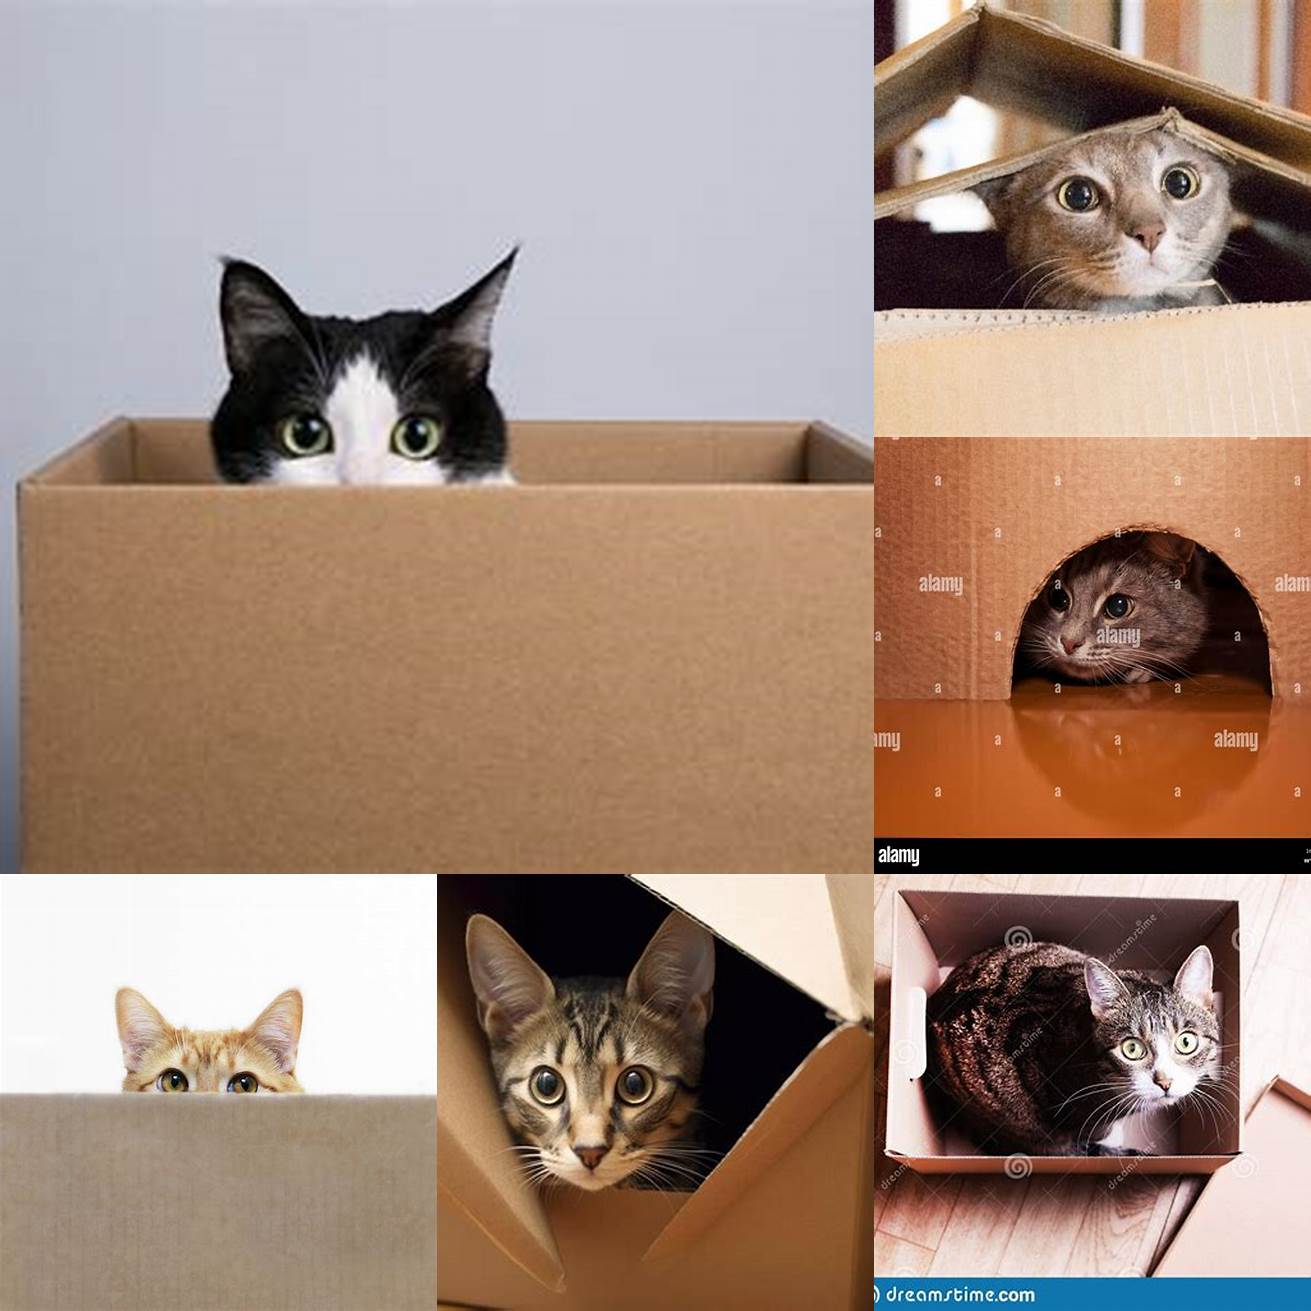 A cat peeking from a cardboard box